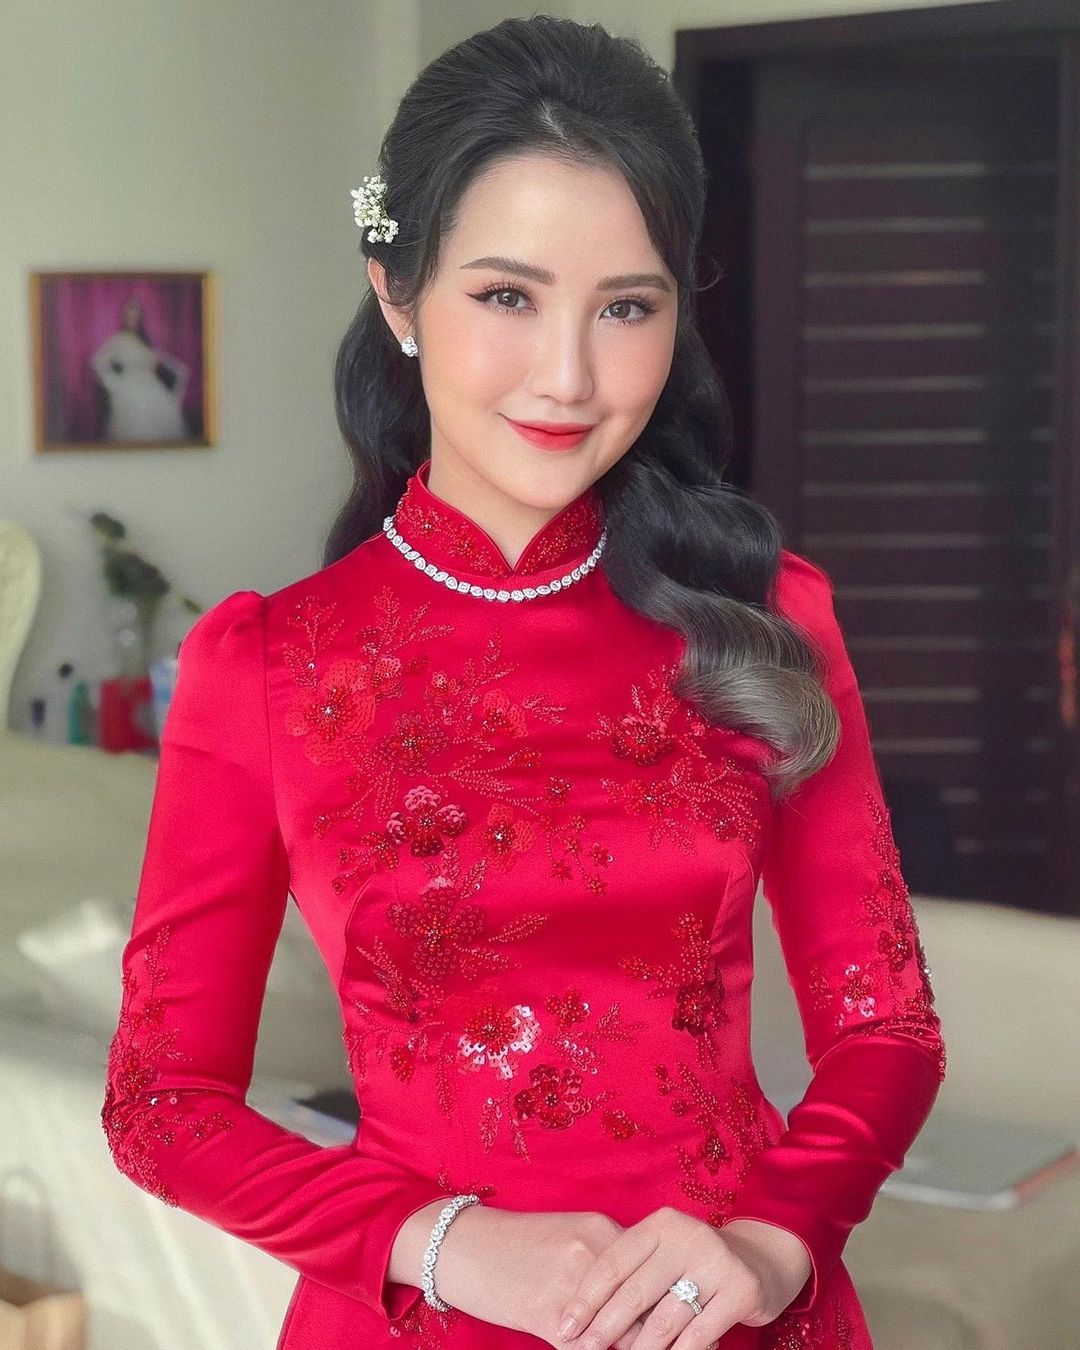 Hoa hậu Mai Phương Thuý khoe vòng 1 nóng bỏng khi dự đám cưới Phan Thành và Primmy Trương - ảnh 9